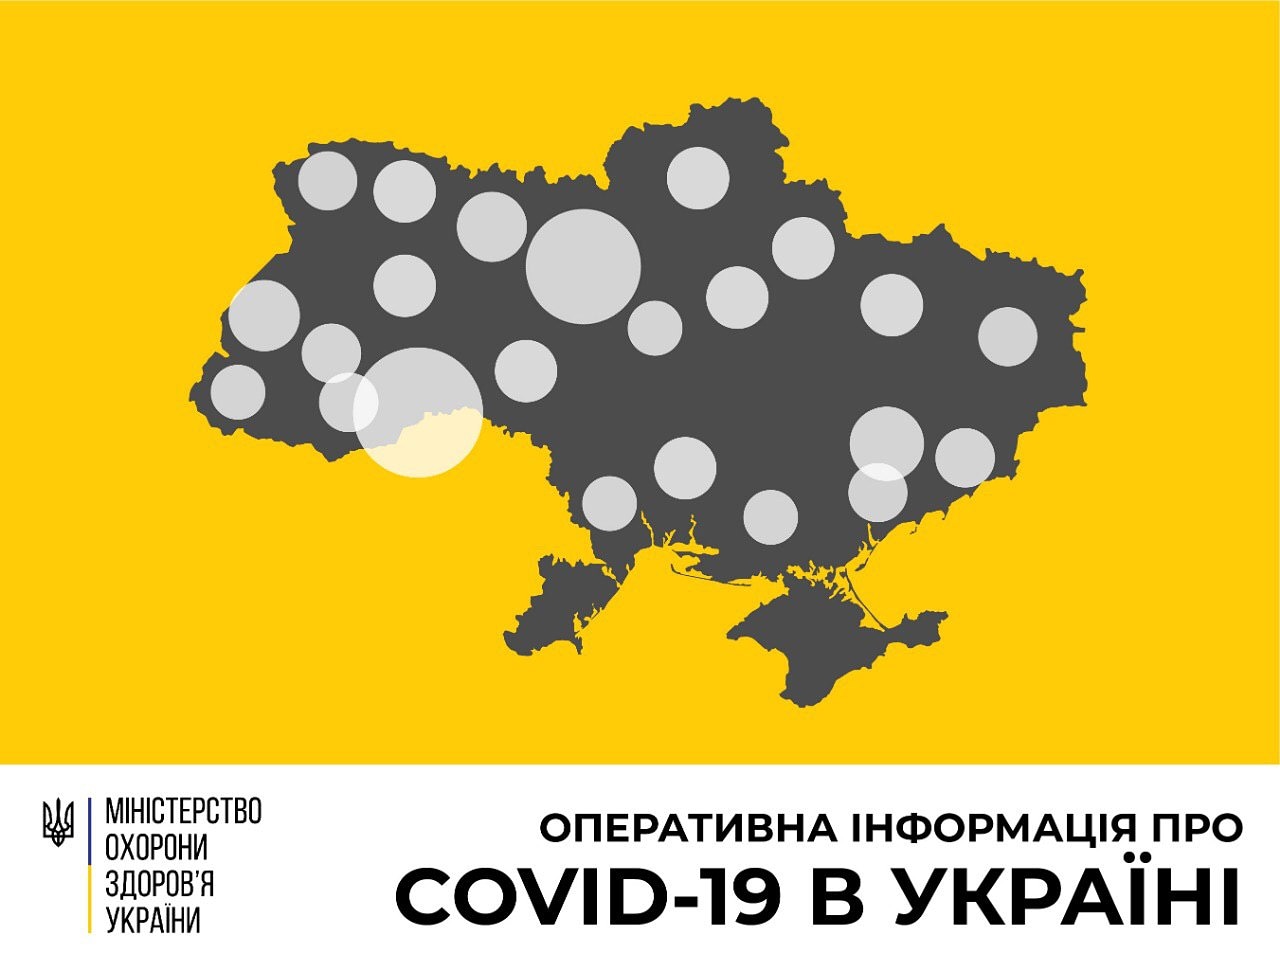 В Україні зафіксовано 418 випадків коронавірусної хвороби COVID-19 - МОЗ